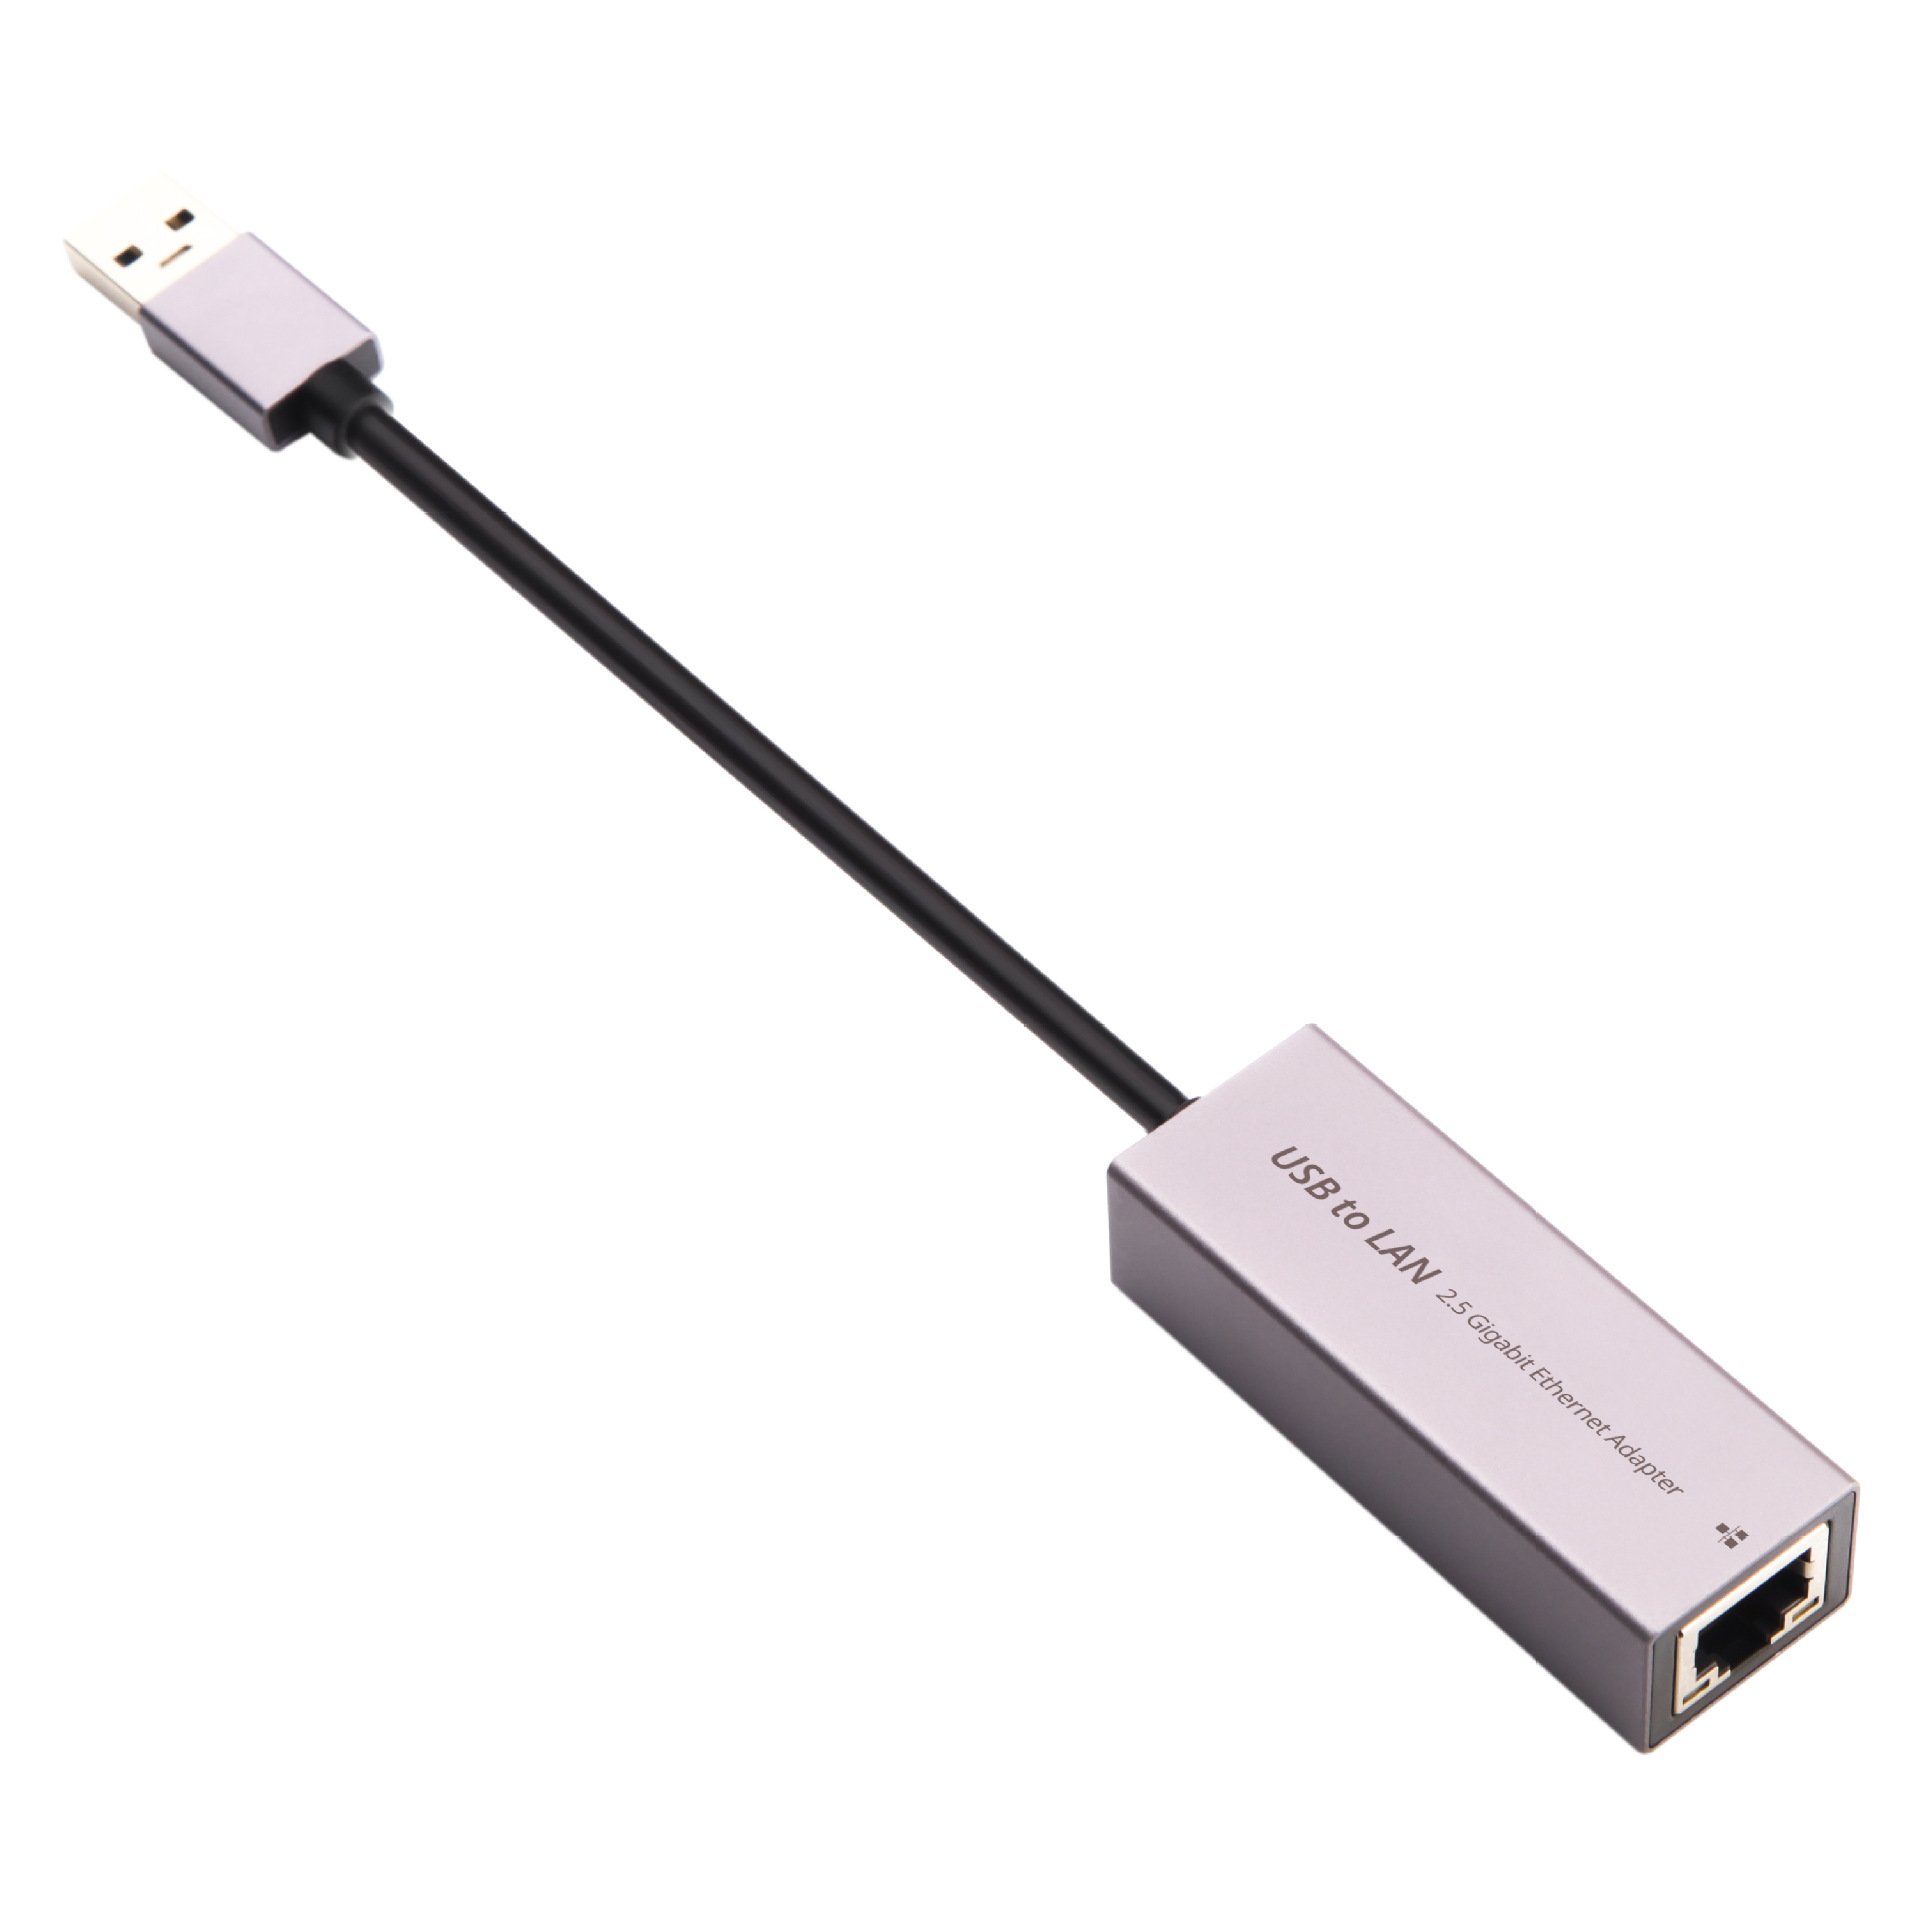 Cáp Chuyển Đổi USB 3.0/USB-C Ra Cổng Mạng Lan RJ45 2500Mbps/2.5 Gigabit Ethernet SeaSy, Cổng Chuyển Đổi USB/Type C To Cổng Lan, Tốc Độ Truyền 2500Mbps, Tương Thích Với Các Mạng Internet Và Hệ Điều Hành – Hàng Chính Hãng